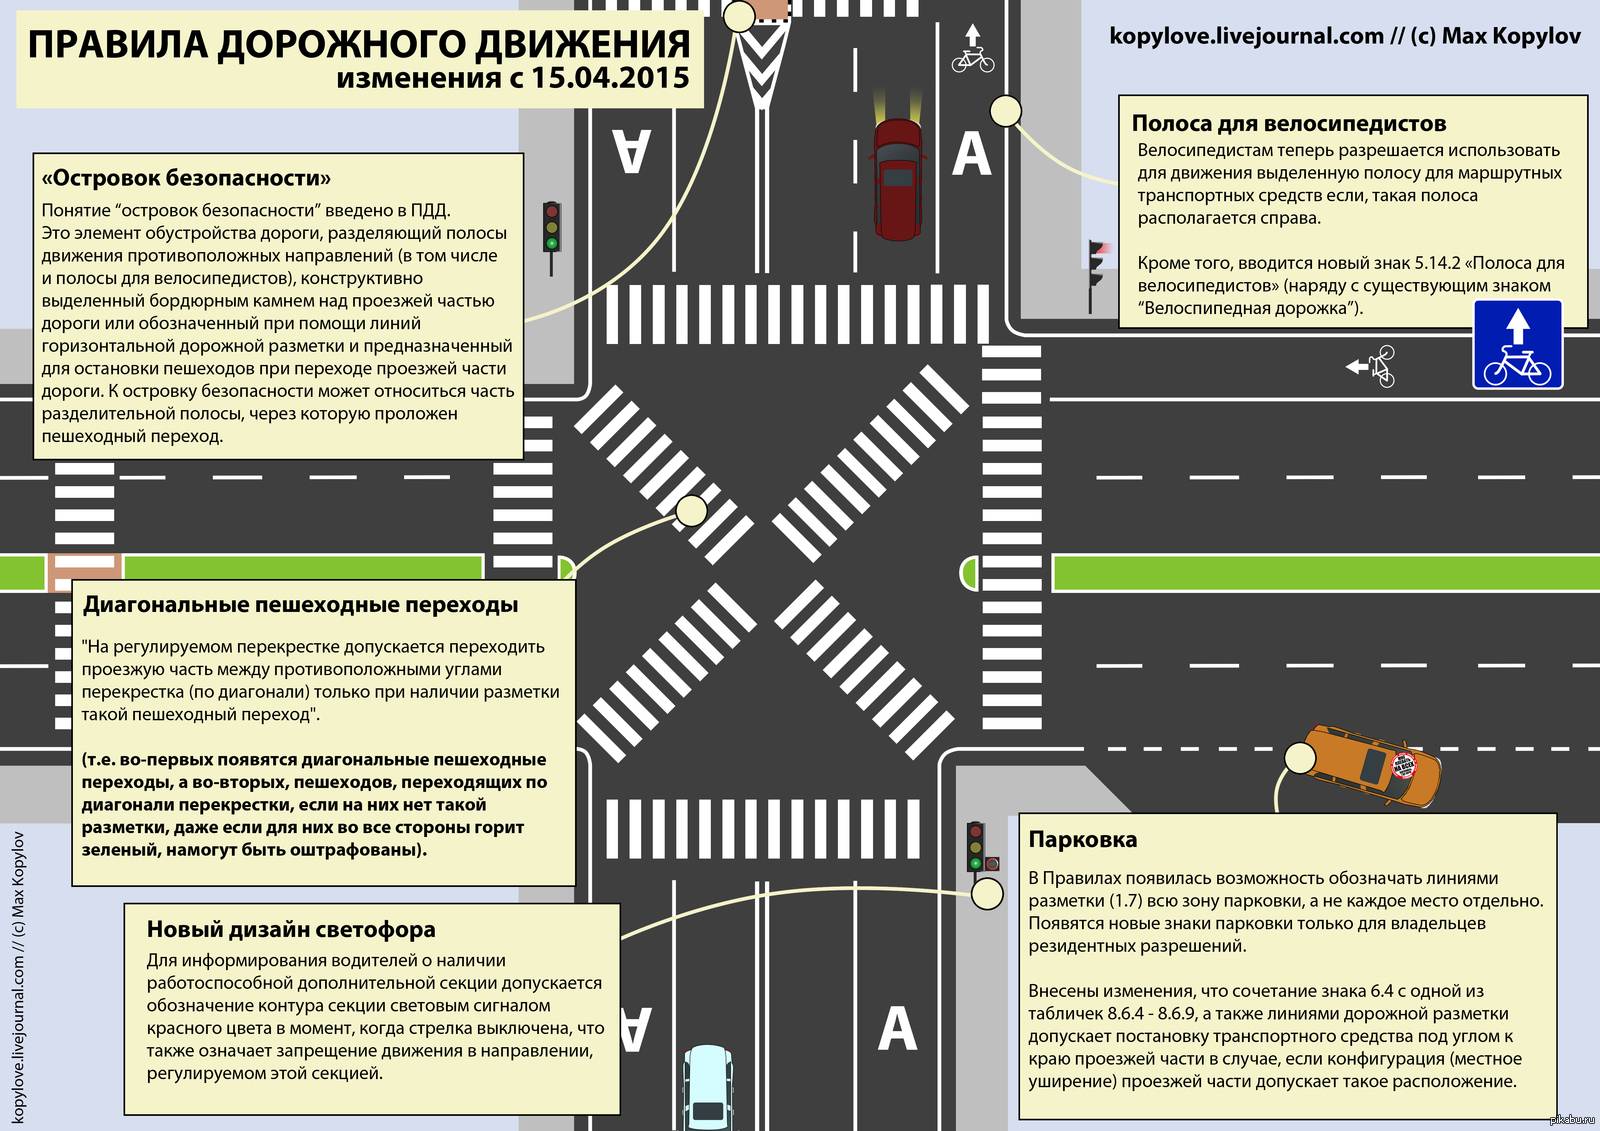 Пдд - пешеходный переход: знак, разметка, правила проезда - realconsult.ru